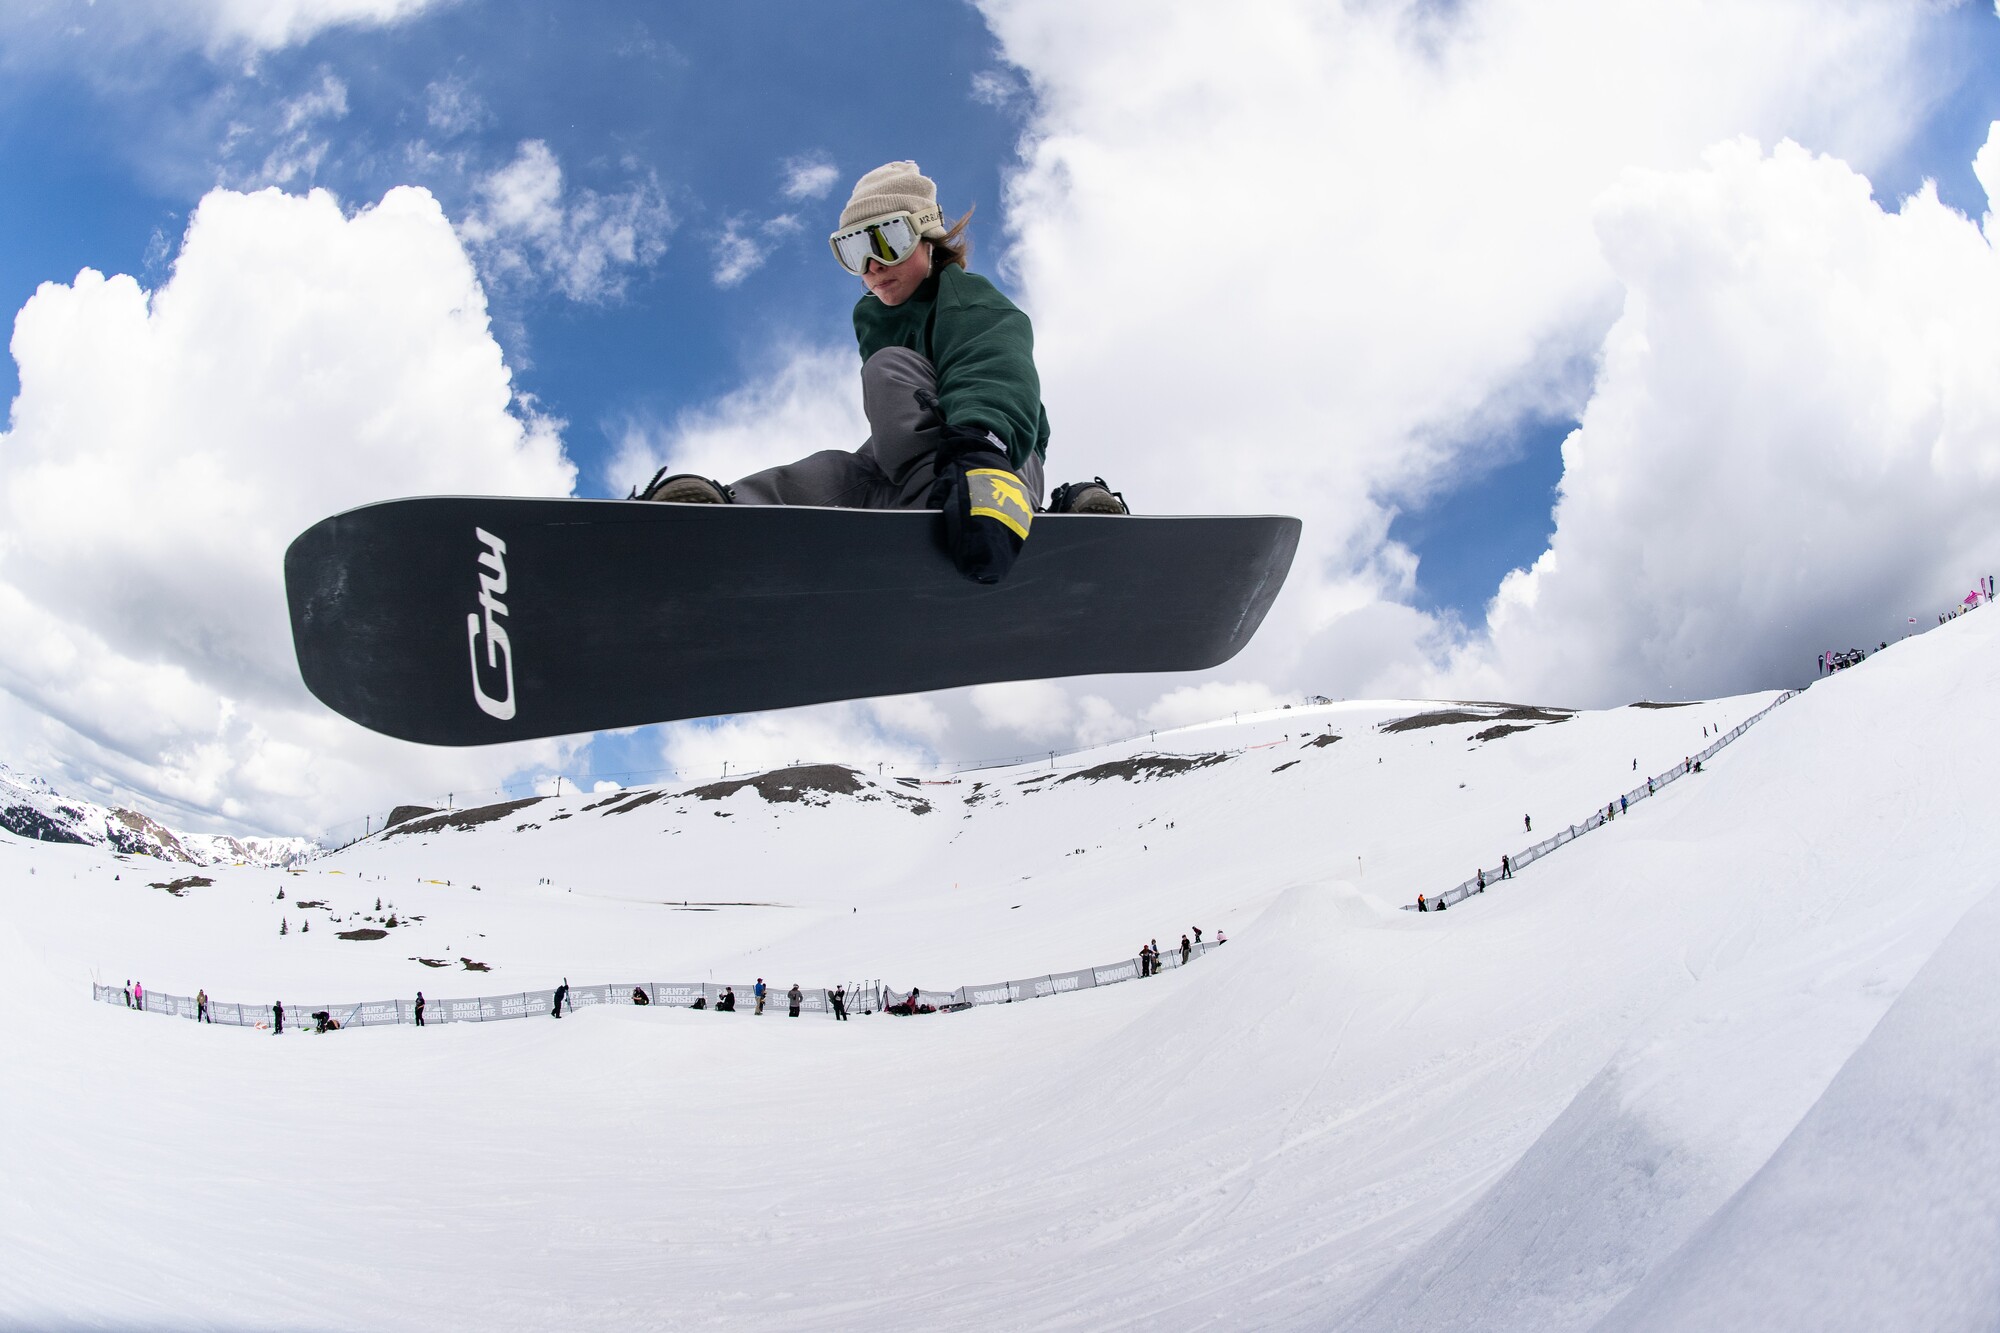 Gnu Gremlin snowboard